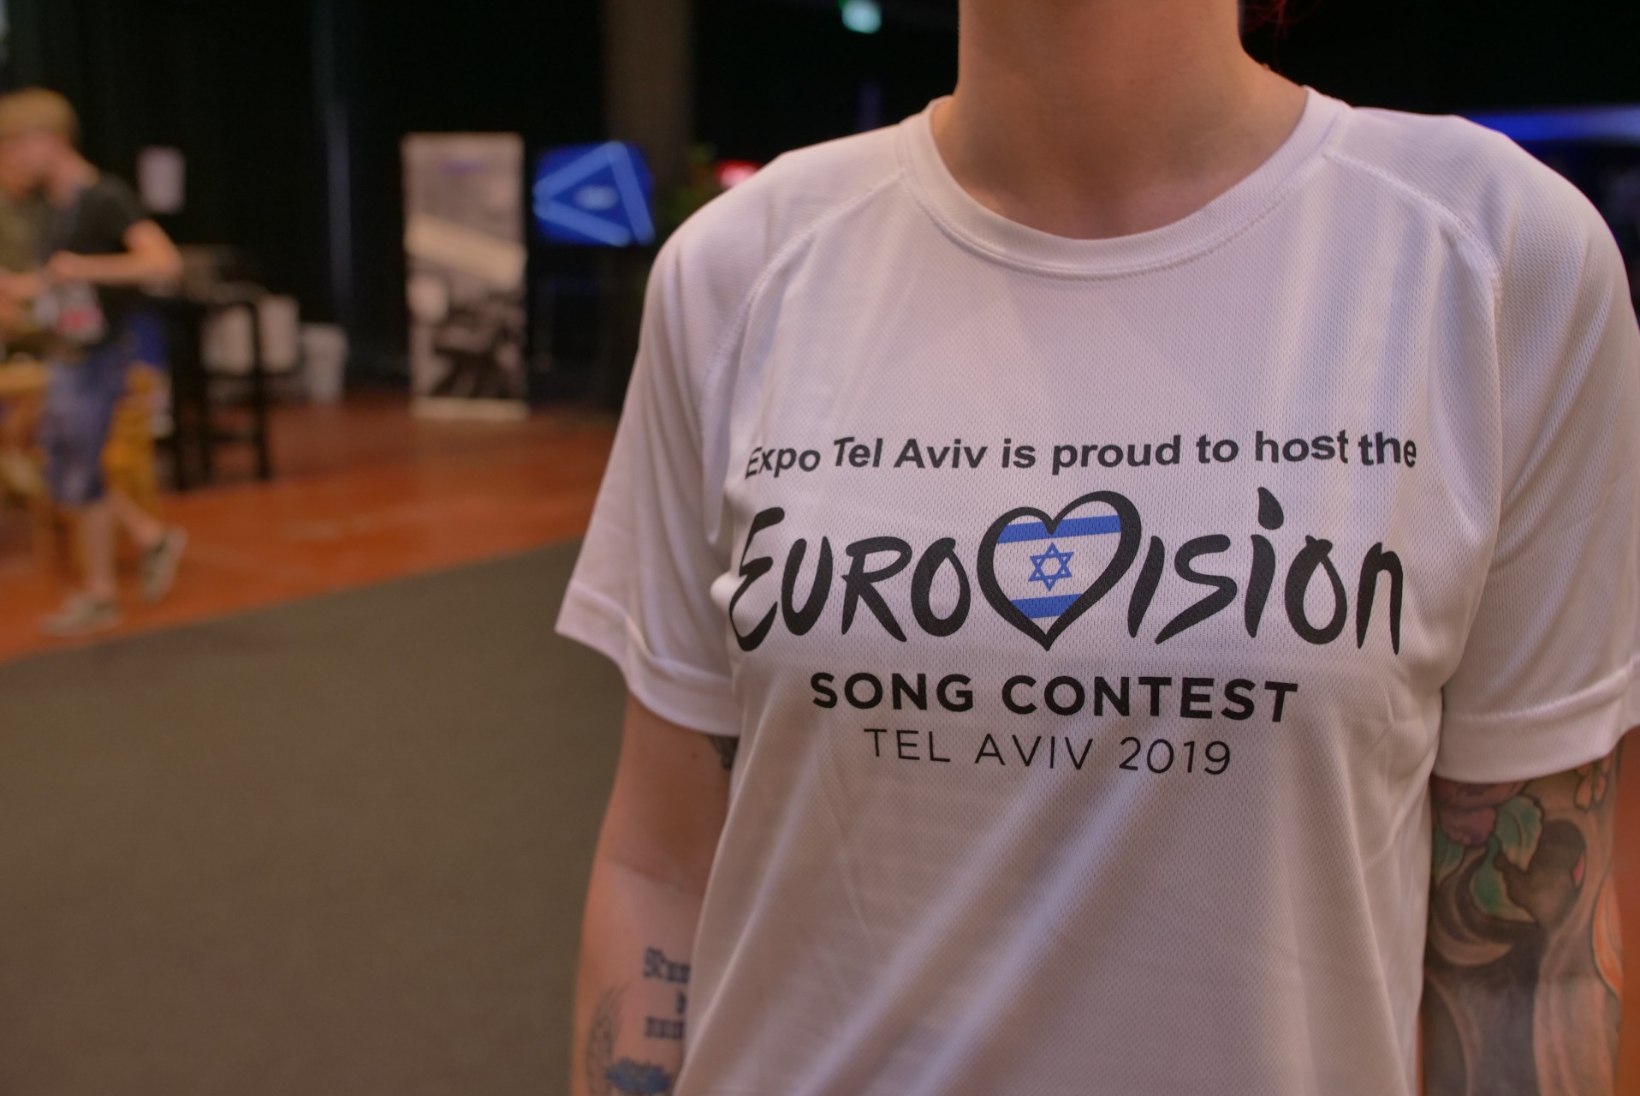 FOTOD | Eurovisioni ajakirjanikele jagatav nänn on tänavu kõvasti kokku kuivanud